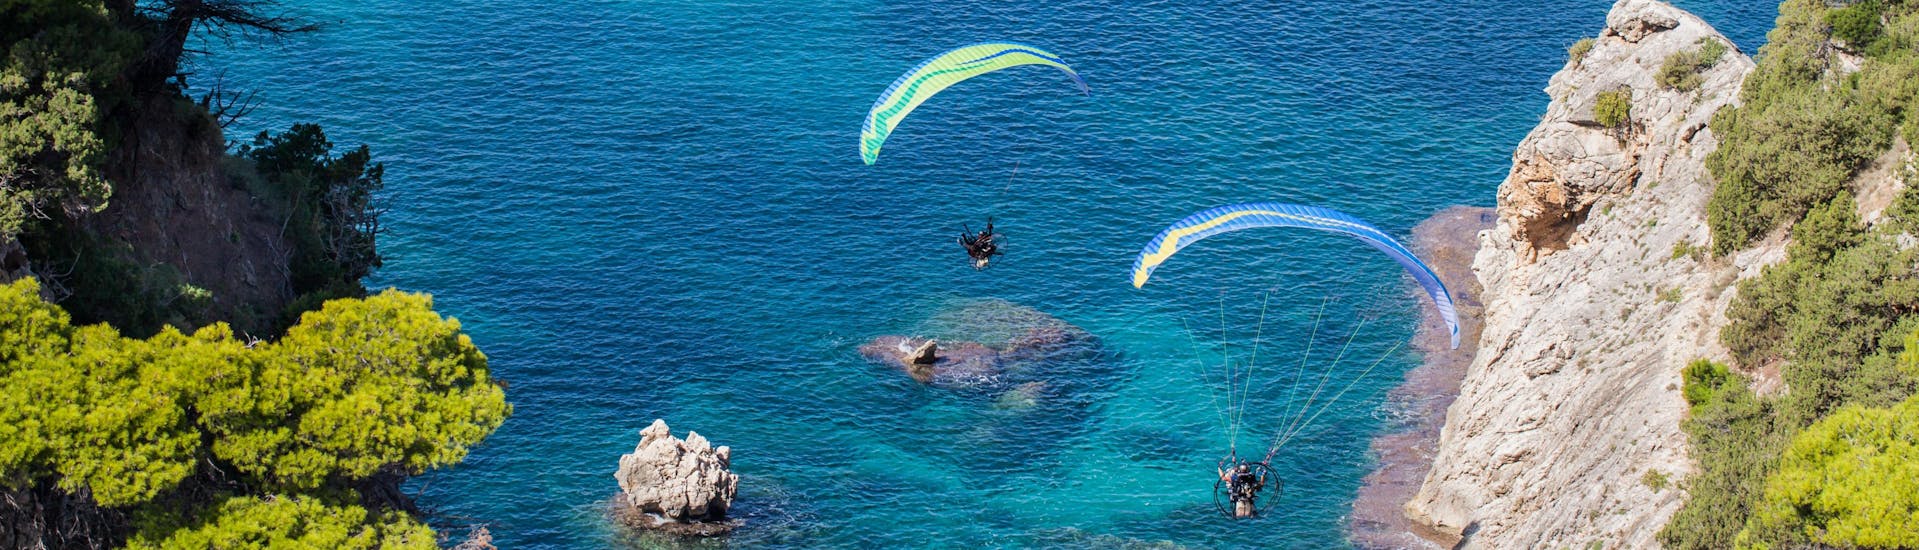 Un parapentiste est émerveillé par le paysage lors d'un vol en parapente biplace dans la célèbre destination de parapente Crète.